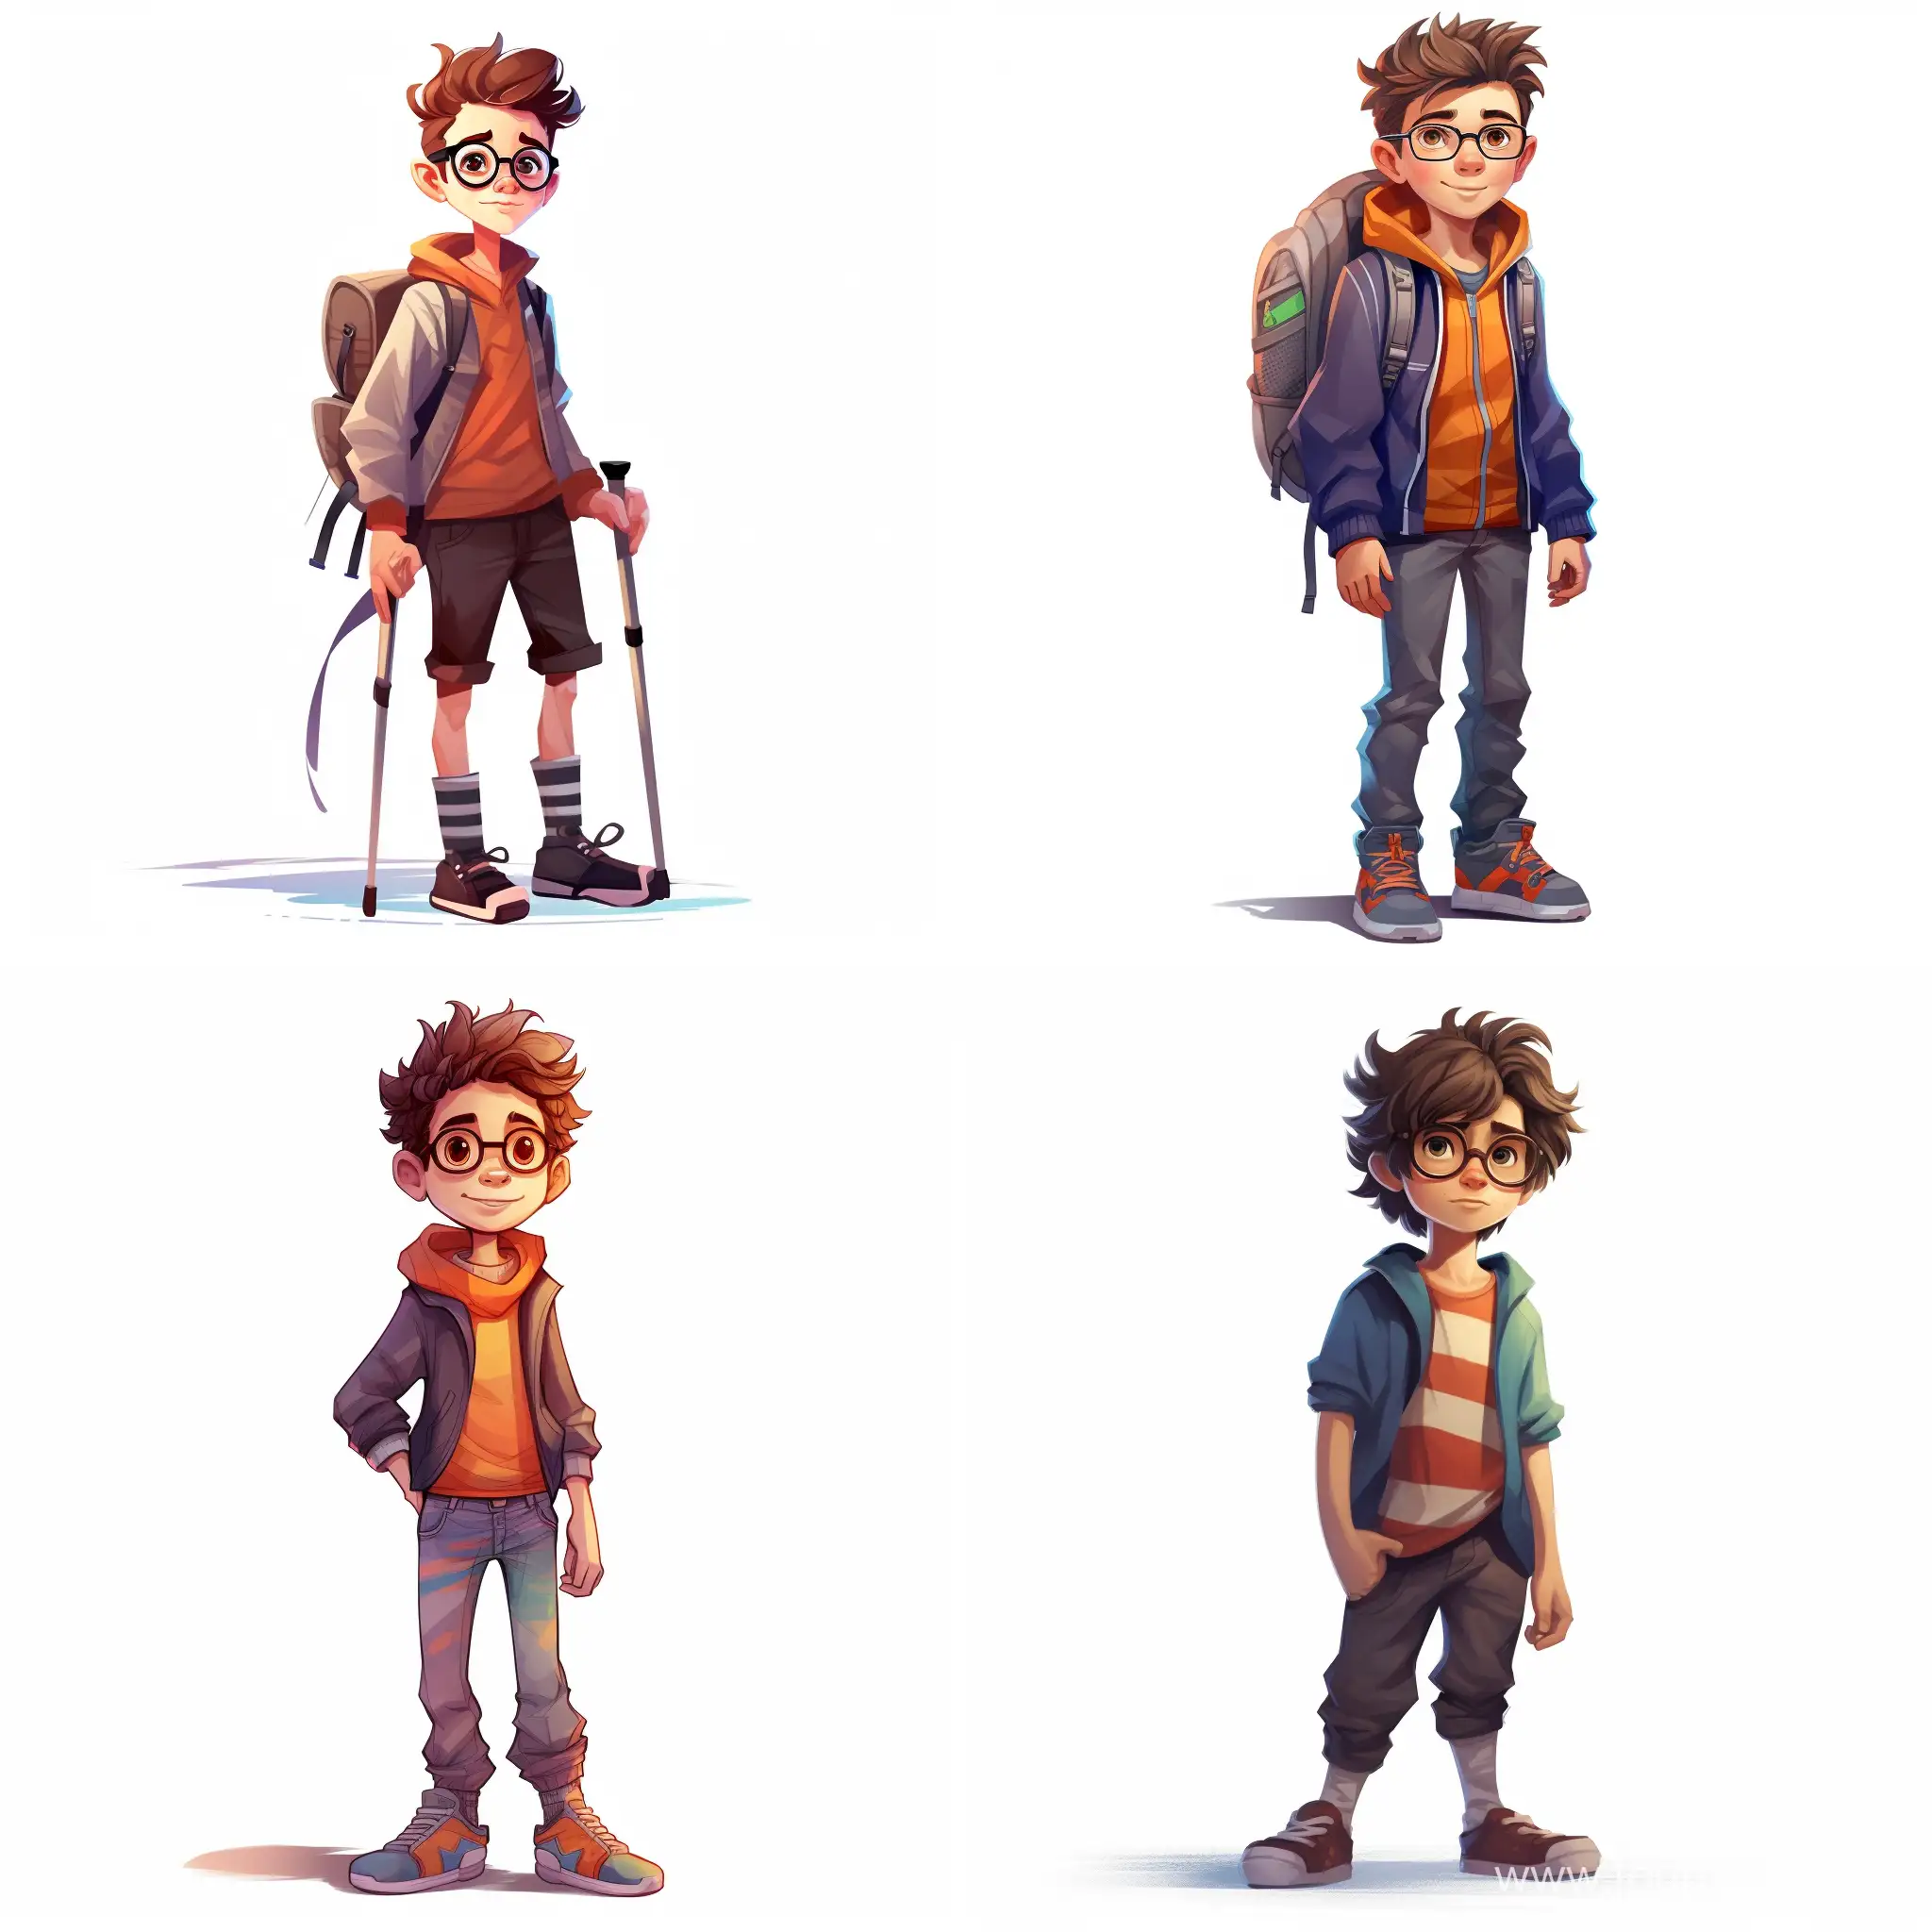 Youthful-Wizard-Adventure-Harry-PotterInspired-Cartoon-Illustration